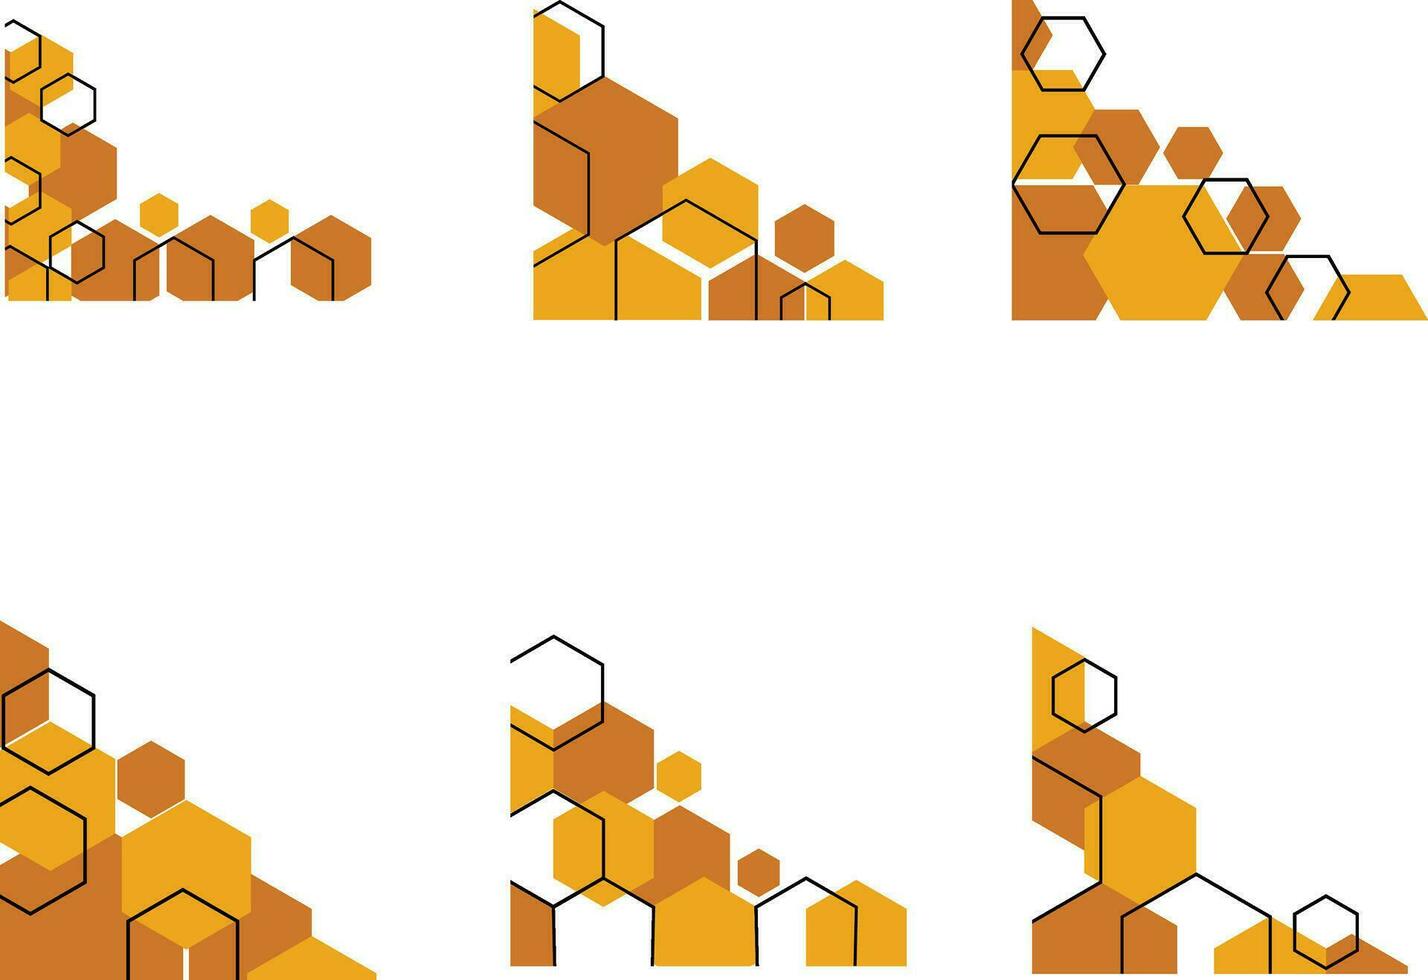 hexagonal canto forma com na moda Projeto. vetor ilustração definir.